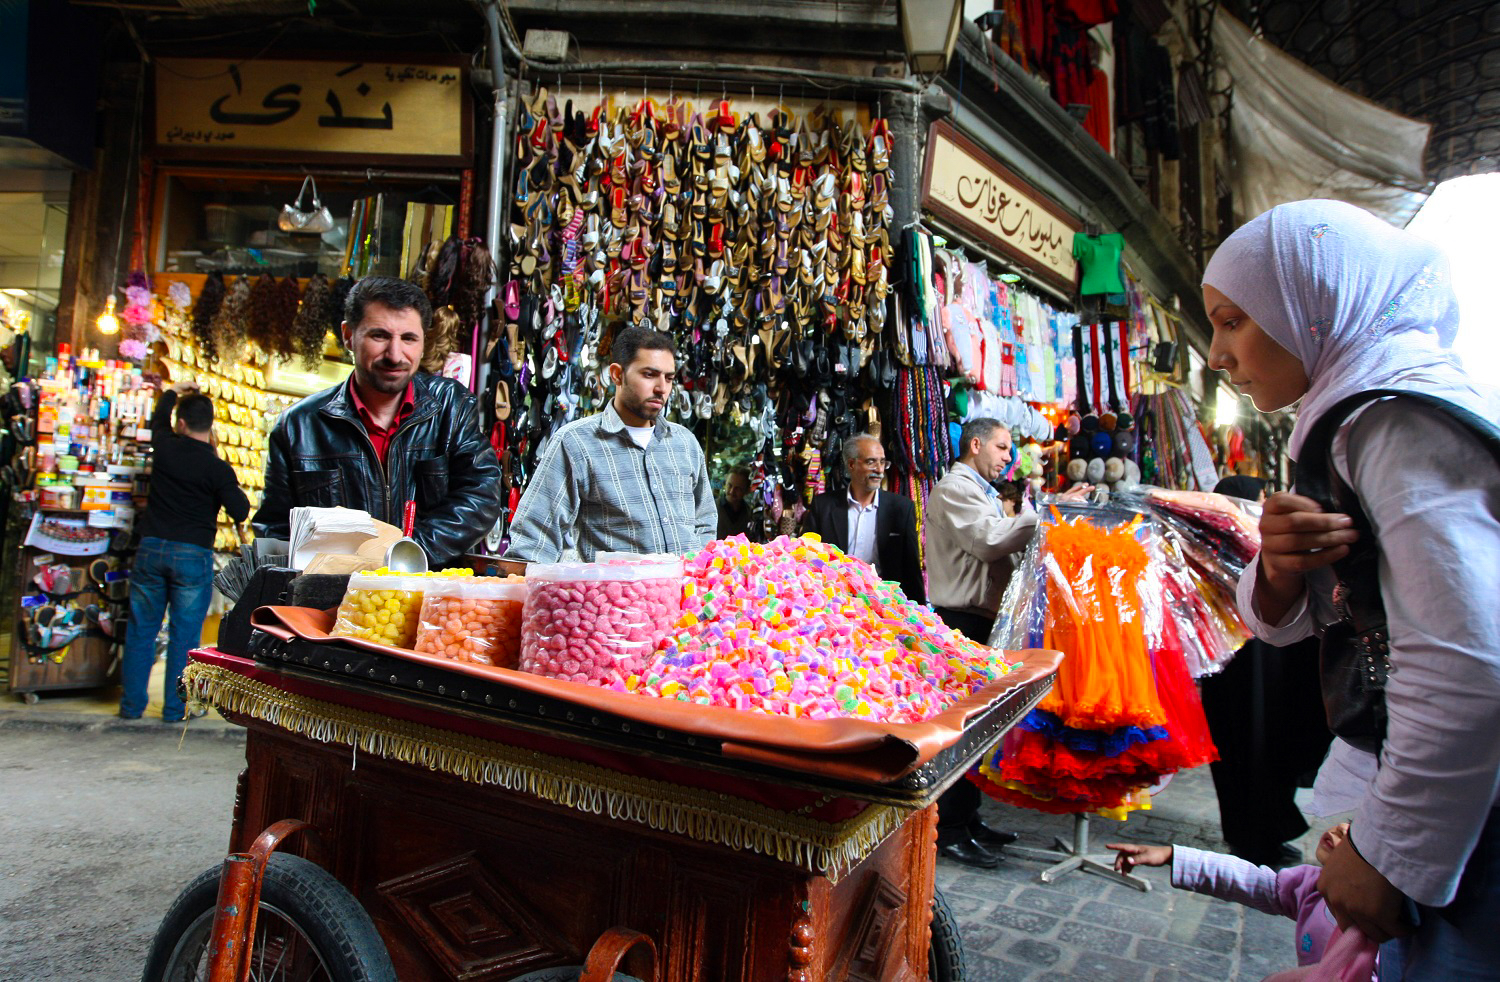 ซีเรีย : รถเข็นขายขนมหวานและลูกกวาดในตลาดกรุงดามัสกัส ประเทศซีเรีย (AFP PHOTO/LOUAI BESHARA)